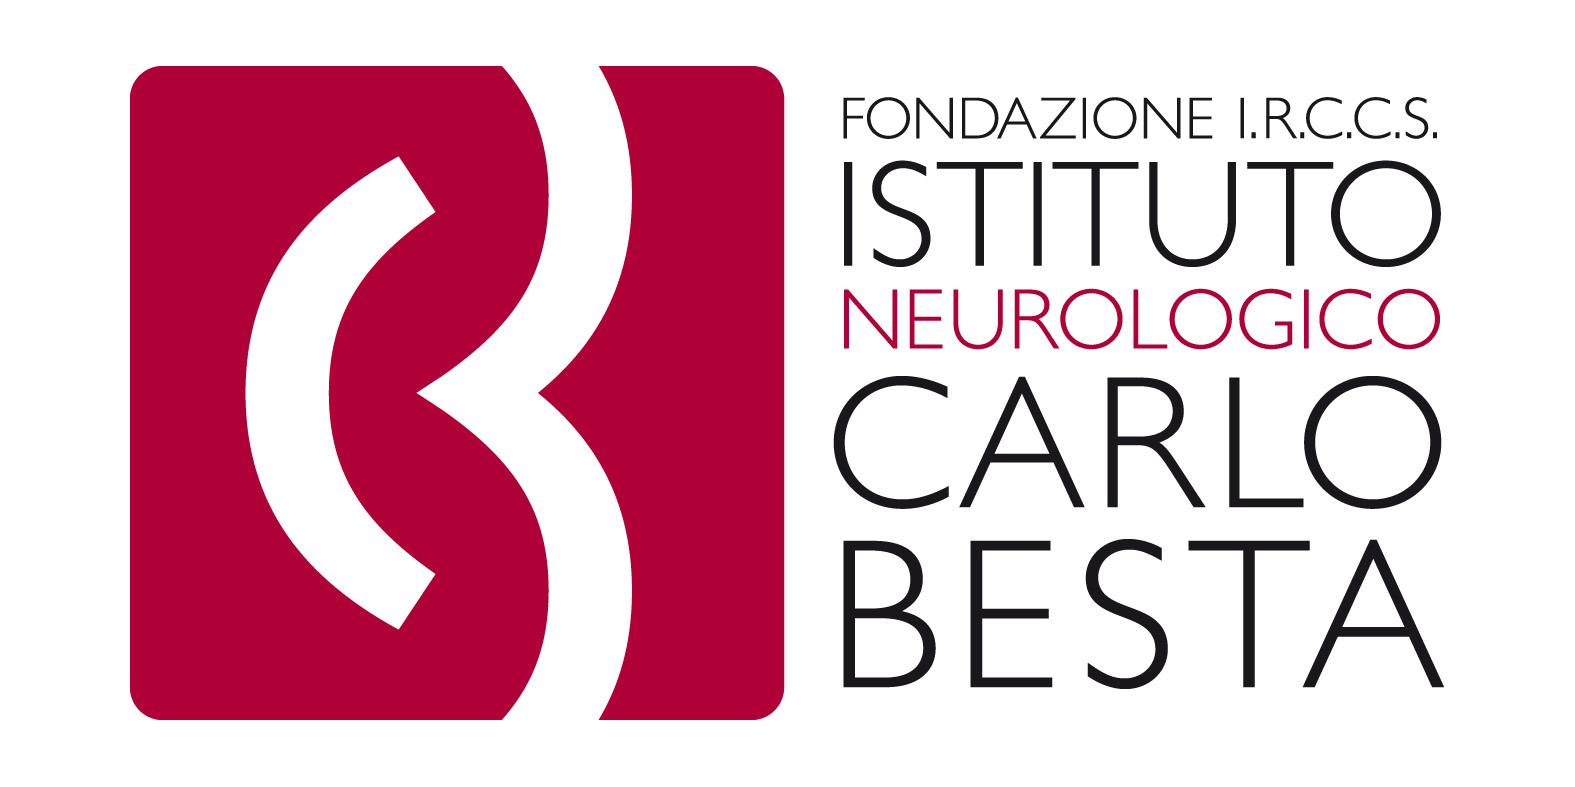 Carlo Besta Institute logo